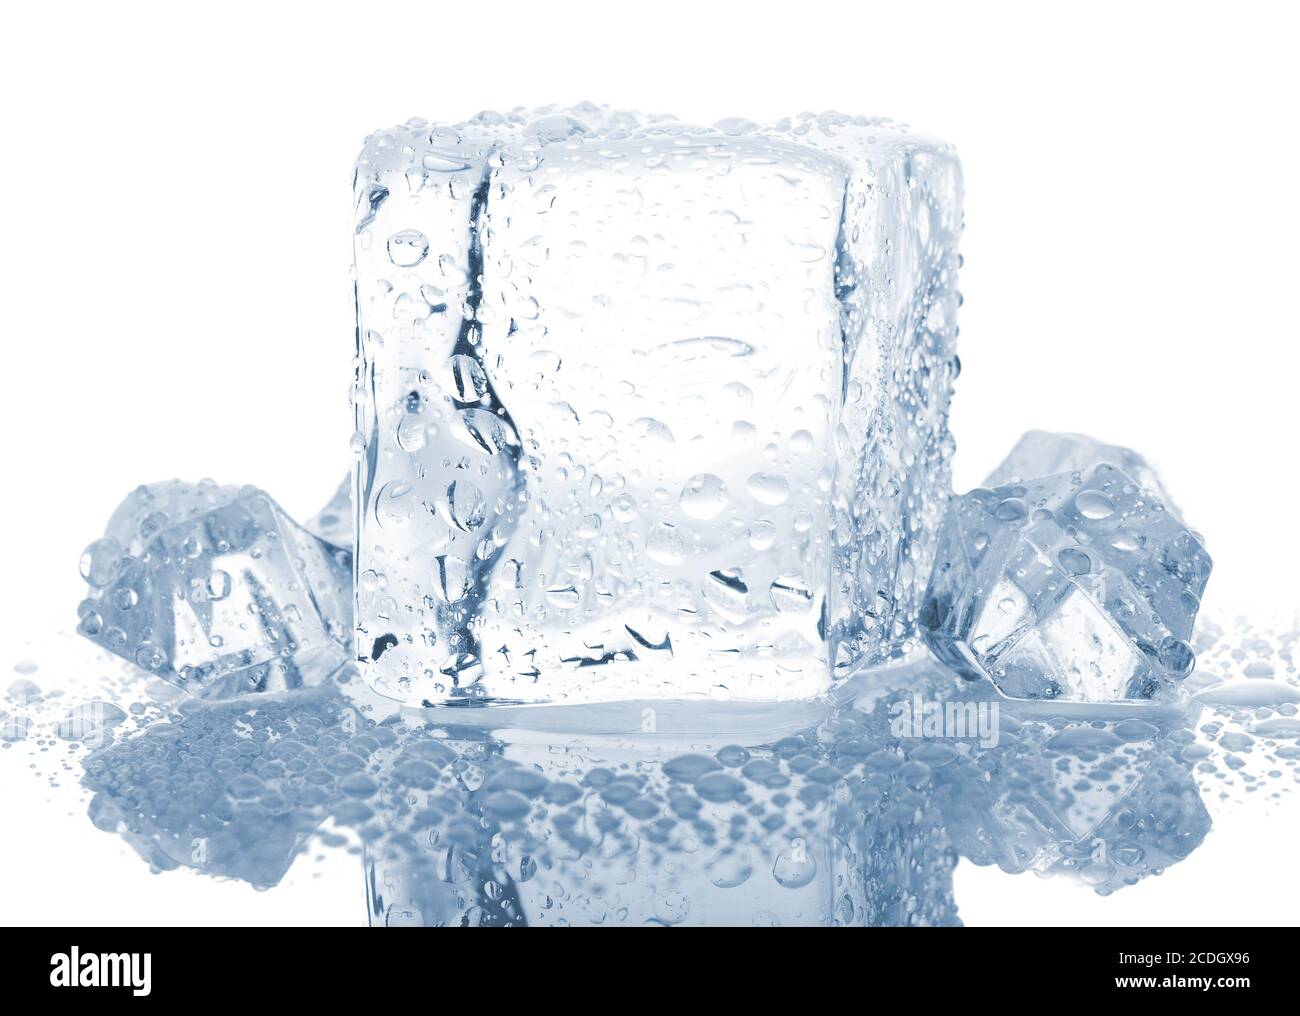 blocs de glace avec gouttes d'eau Banque D'Images